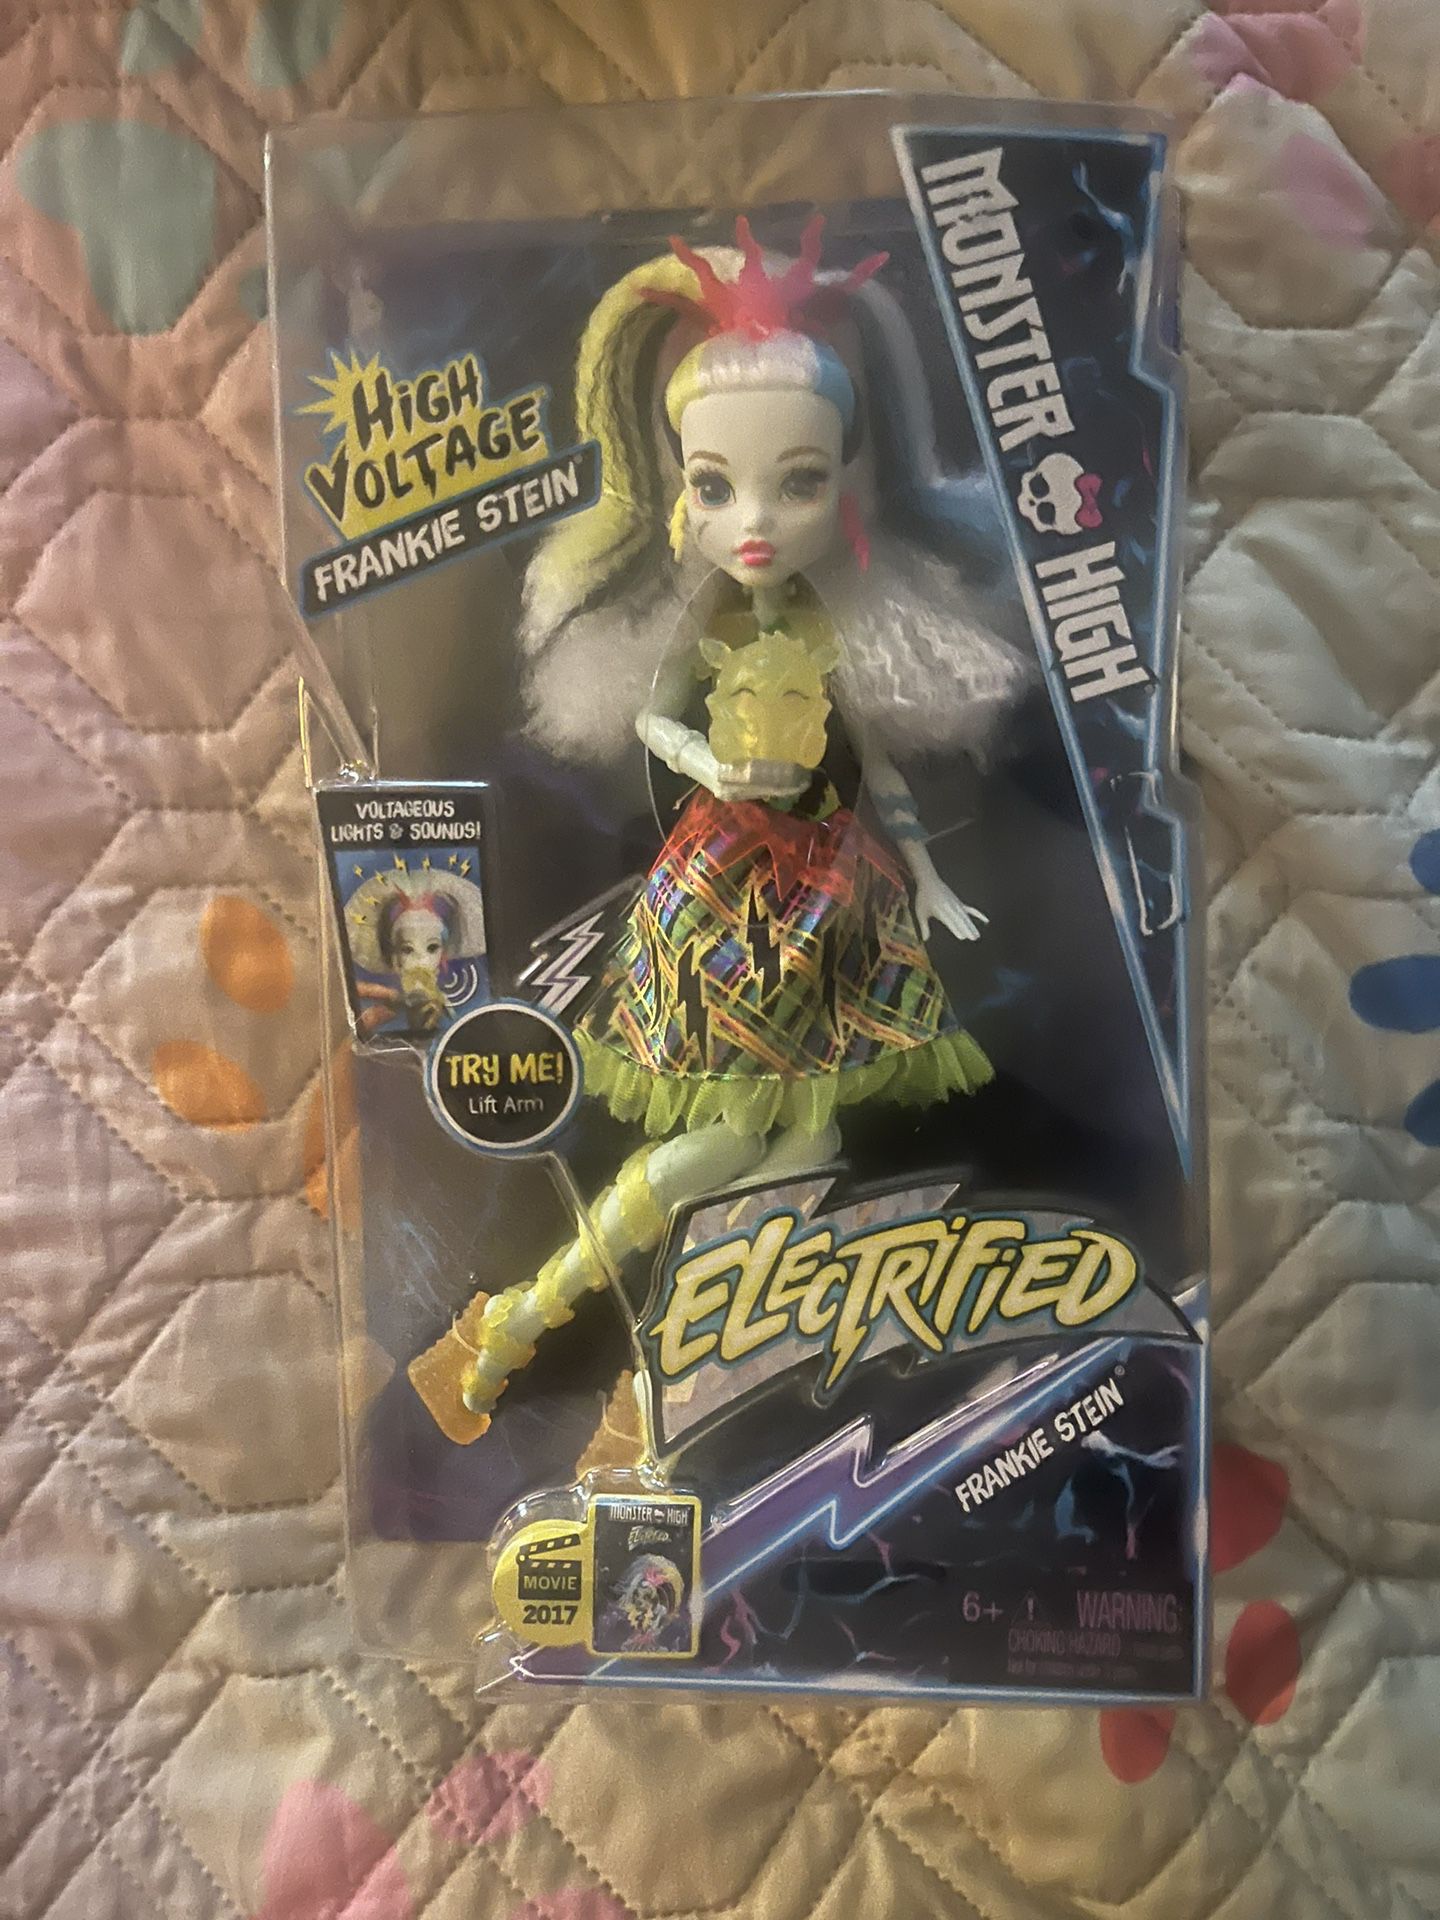 2016 Mattel Monster High Electrified High Voltage Frankie Stein Doll 